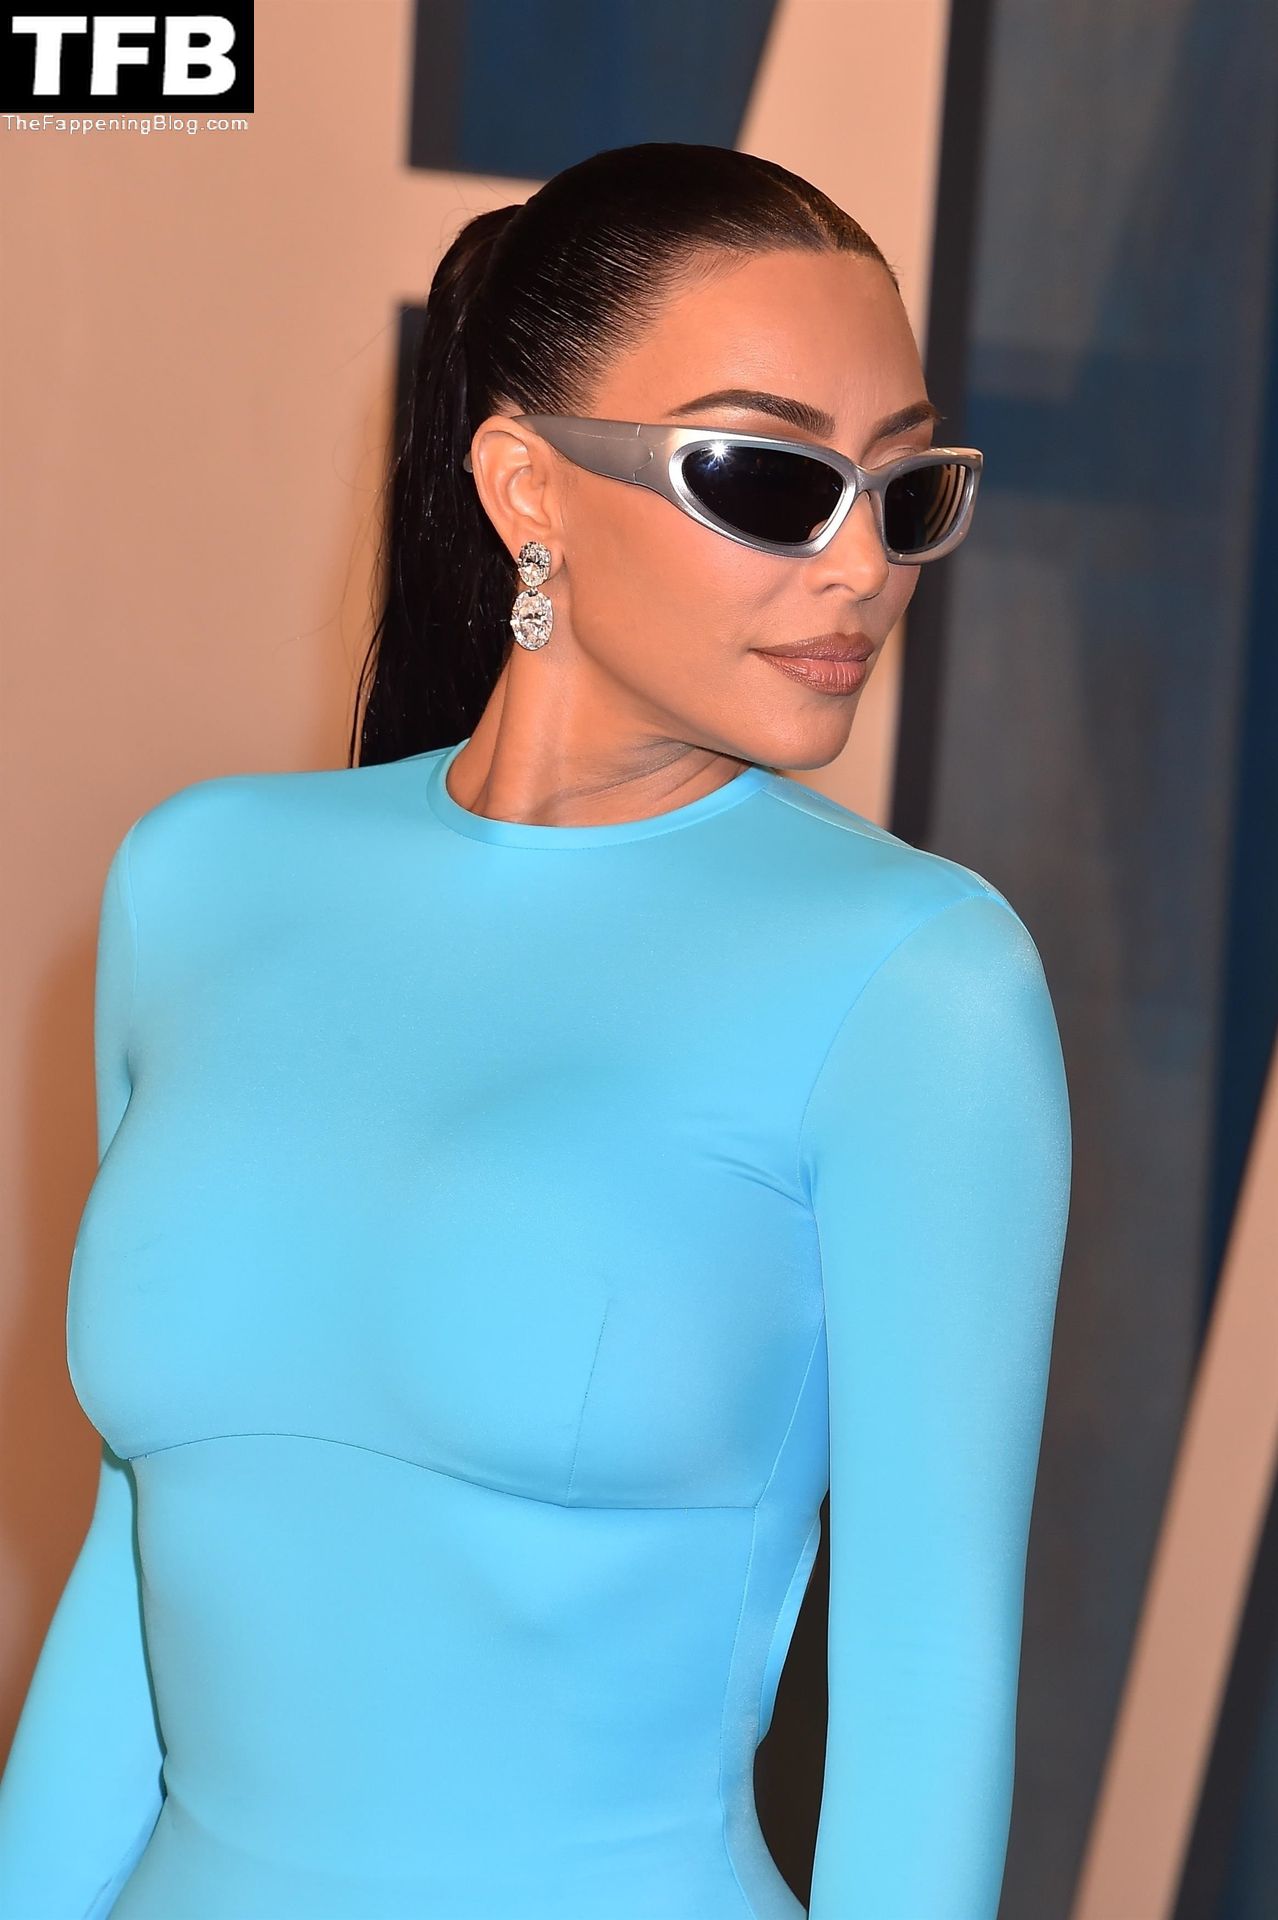 Kim-Kardashian-Sexy-The-Fappening-Blog-21-1.jpg